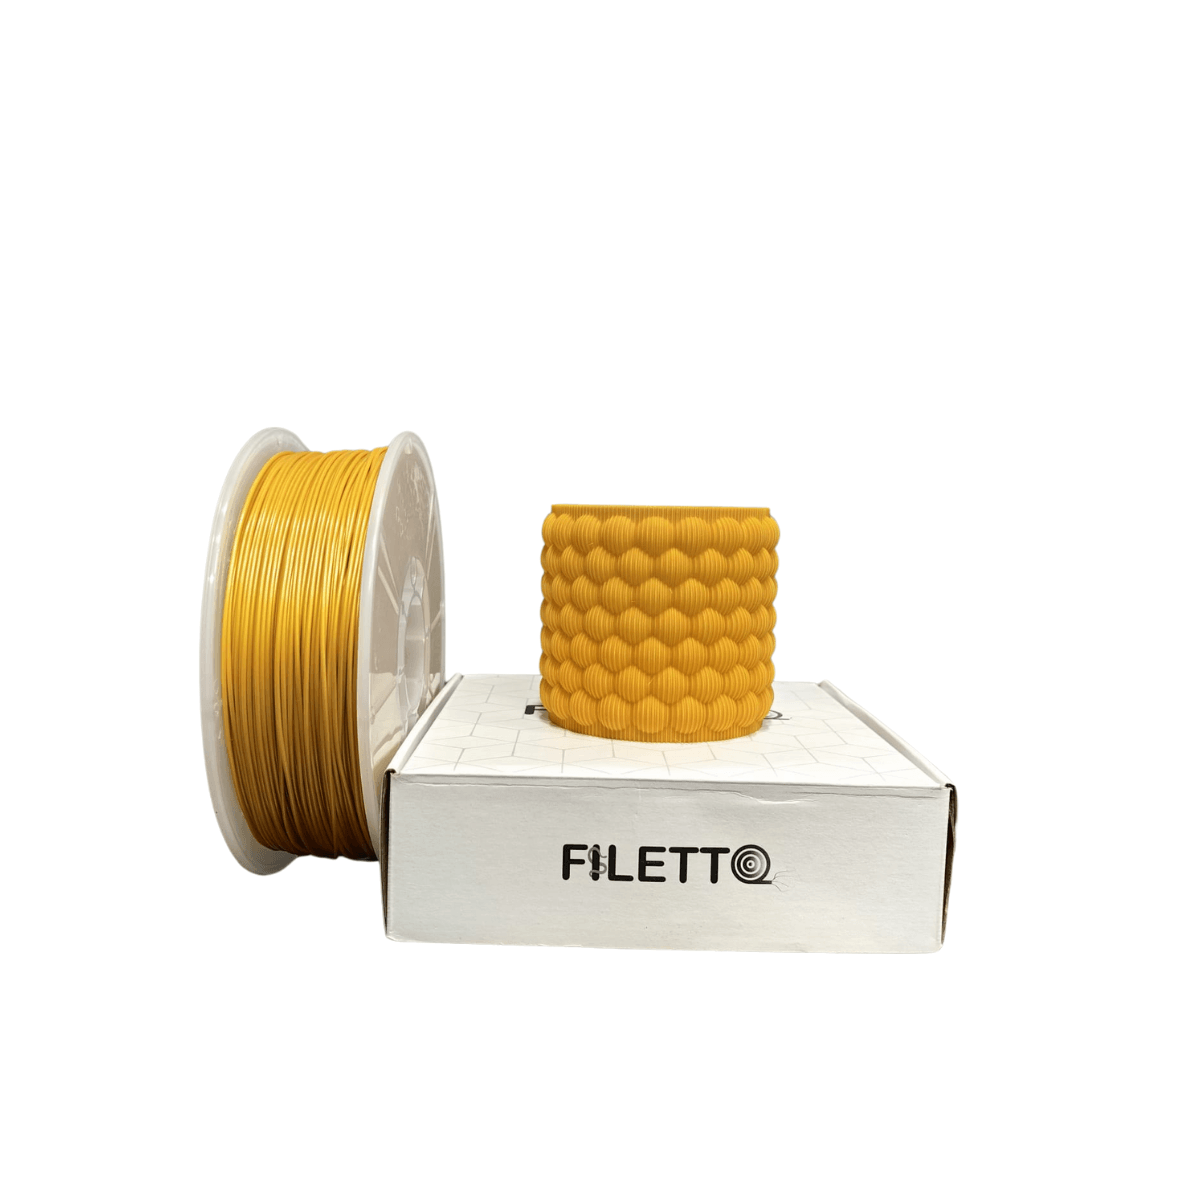 Filetto Pla+ Filament 1.75mm 1KG - Gold